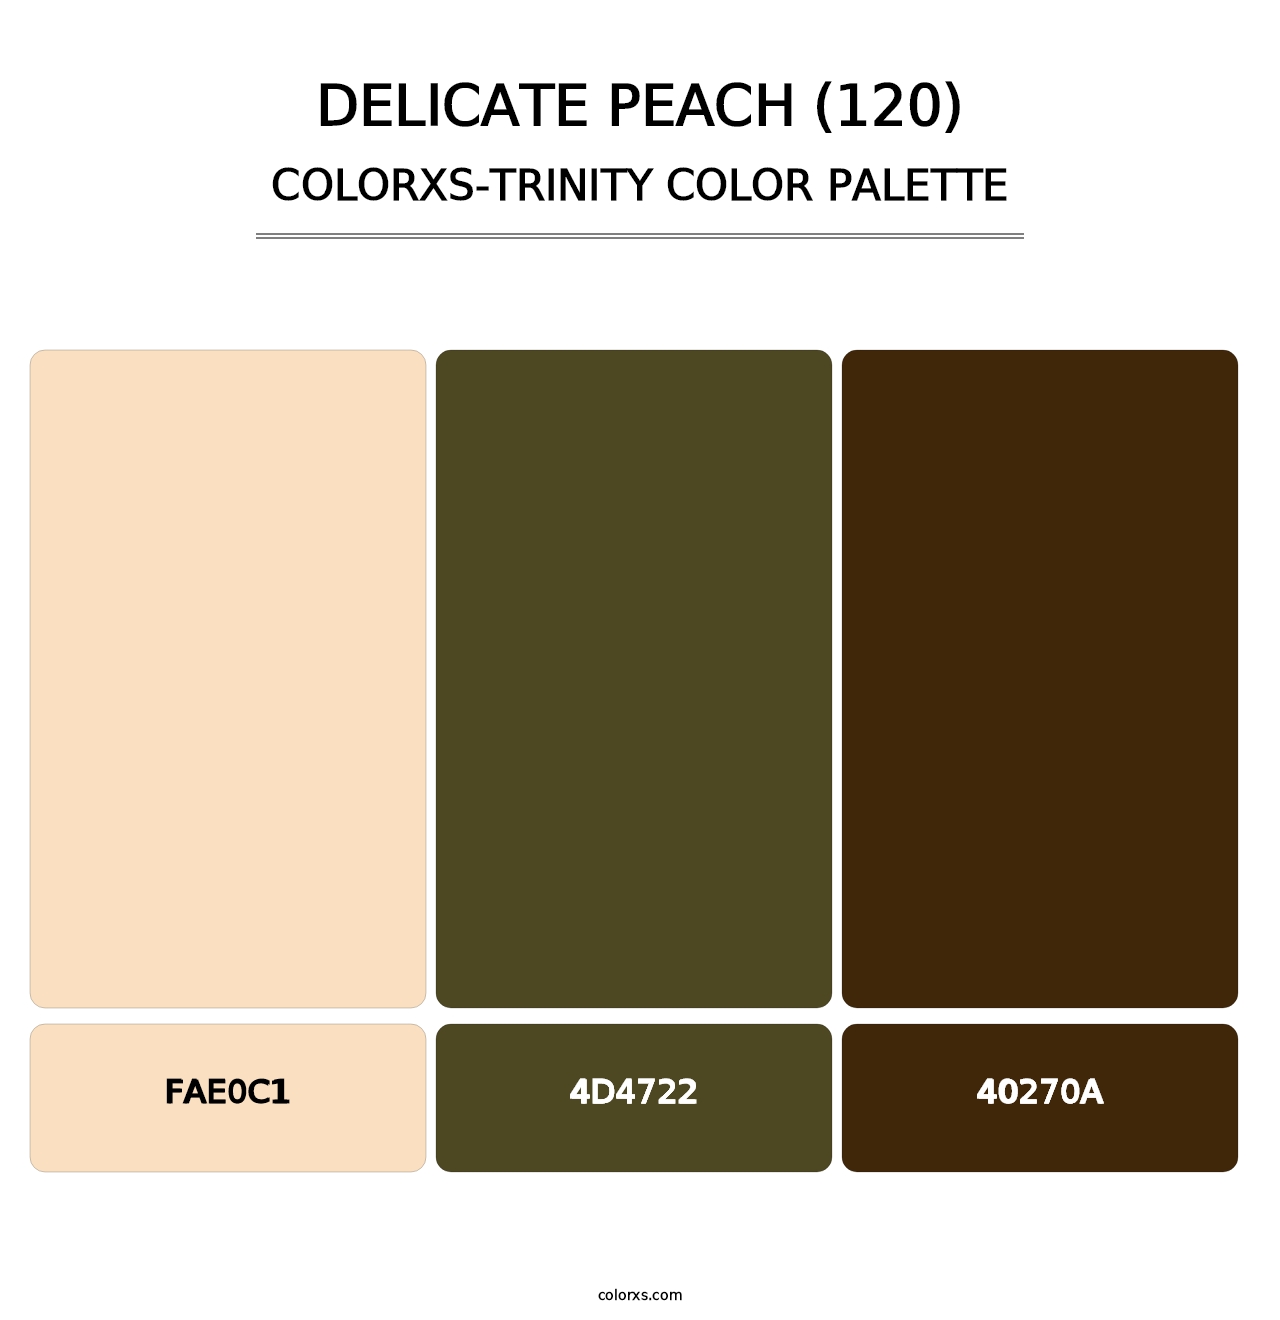 Delicate Peach (120) - Colorxs Trinity Palette